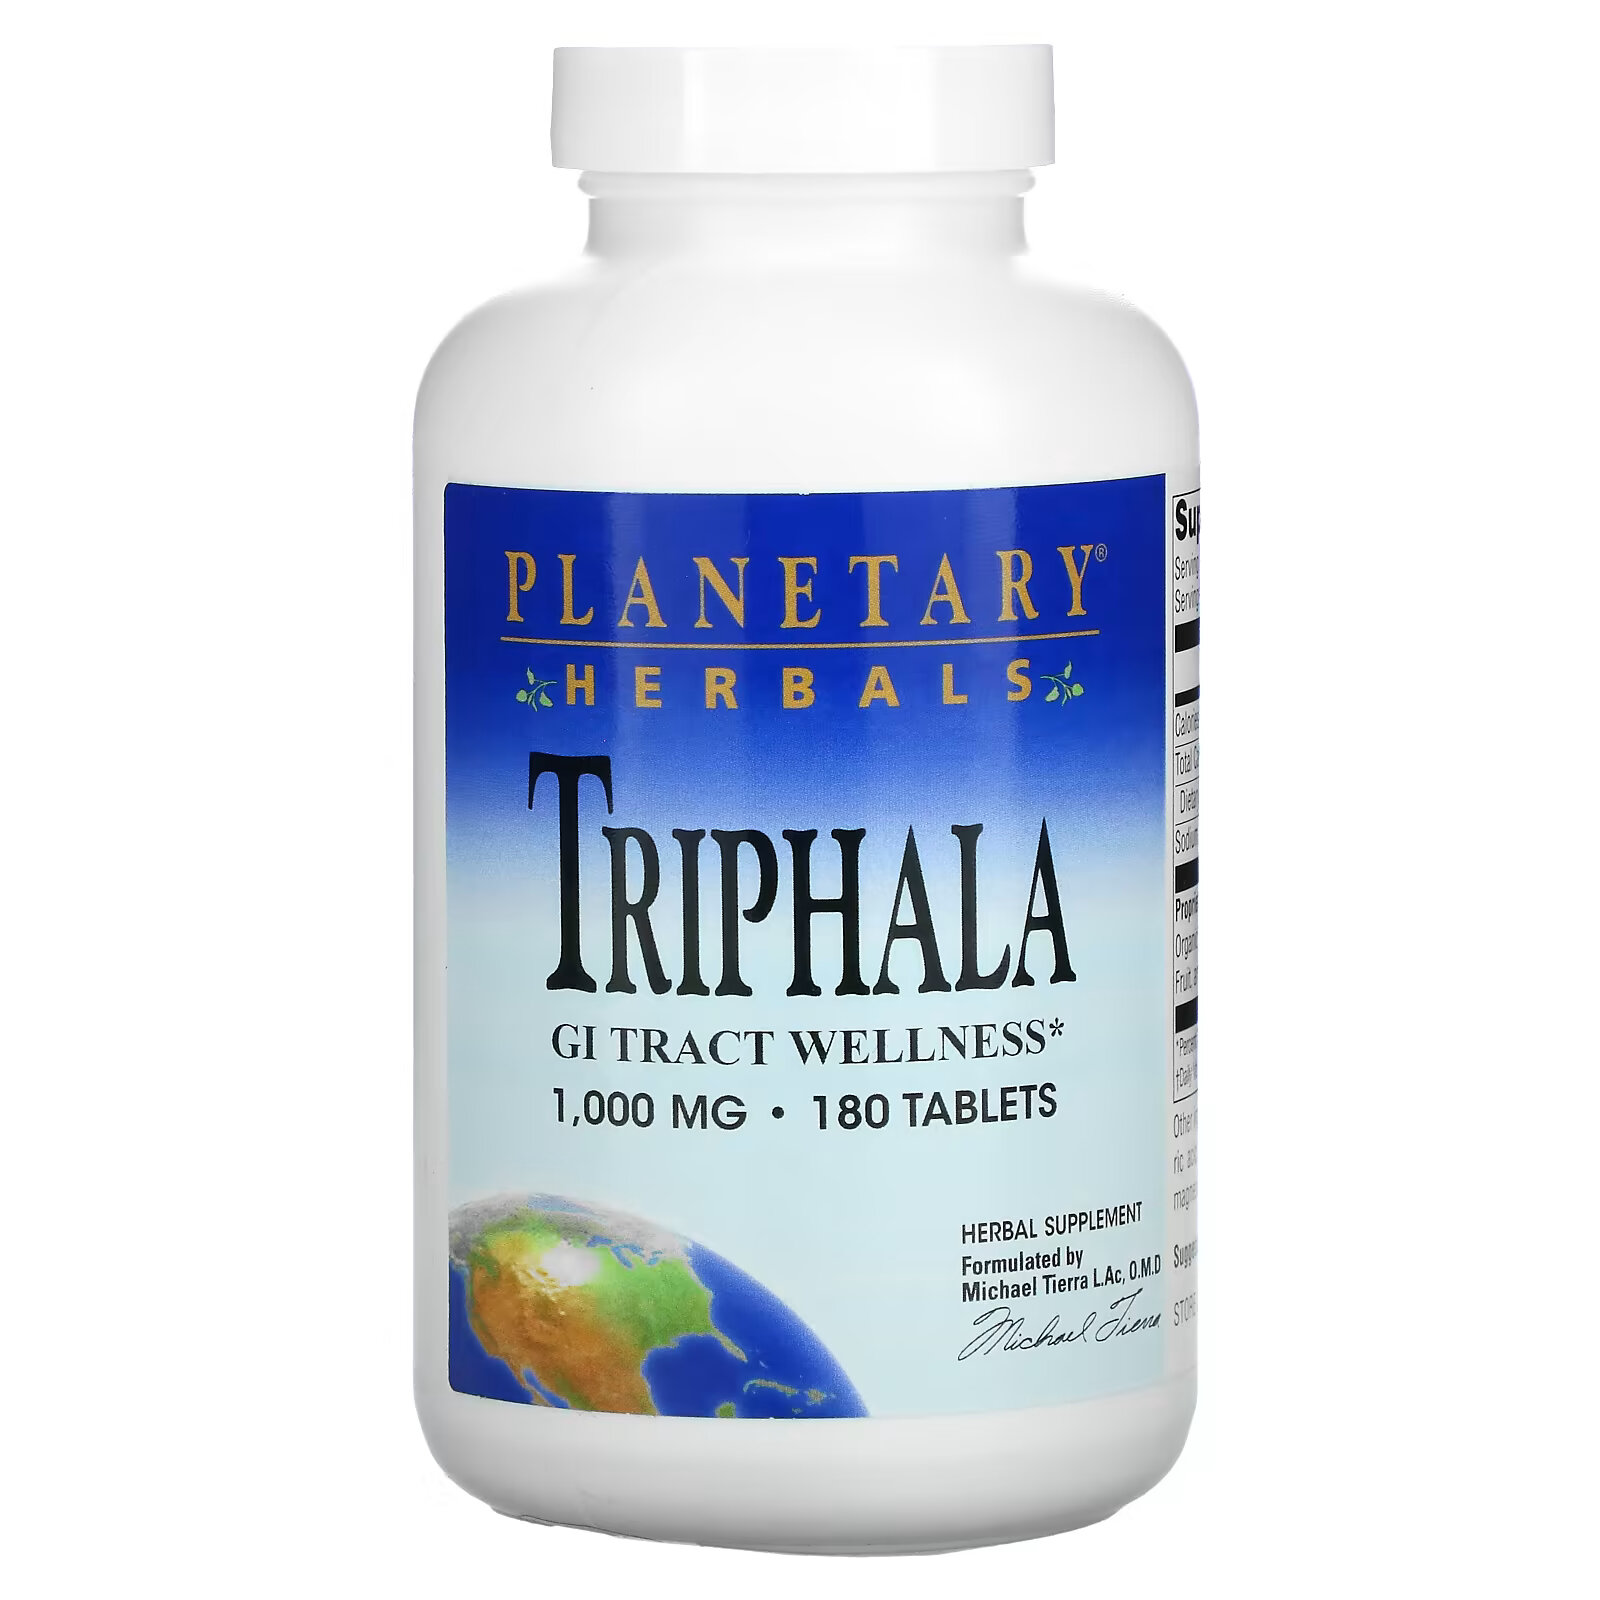 planetary herbals triphala здоровье желудочно кишечного тракта 1000 мг 180 таблеток Planetary Herbals, Triphala, здоровье желудочно-кишечного тракта, 1000 мг, 180 таблеток